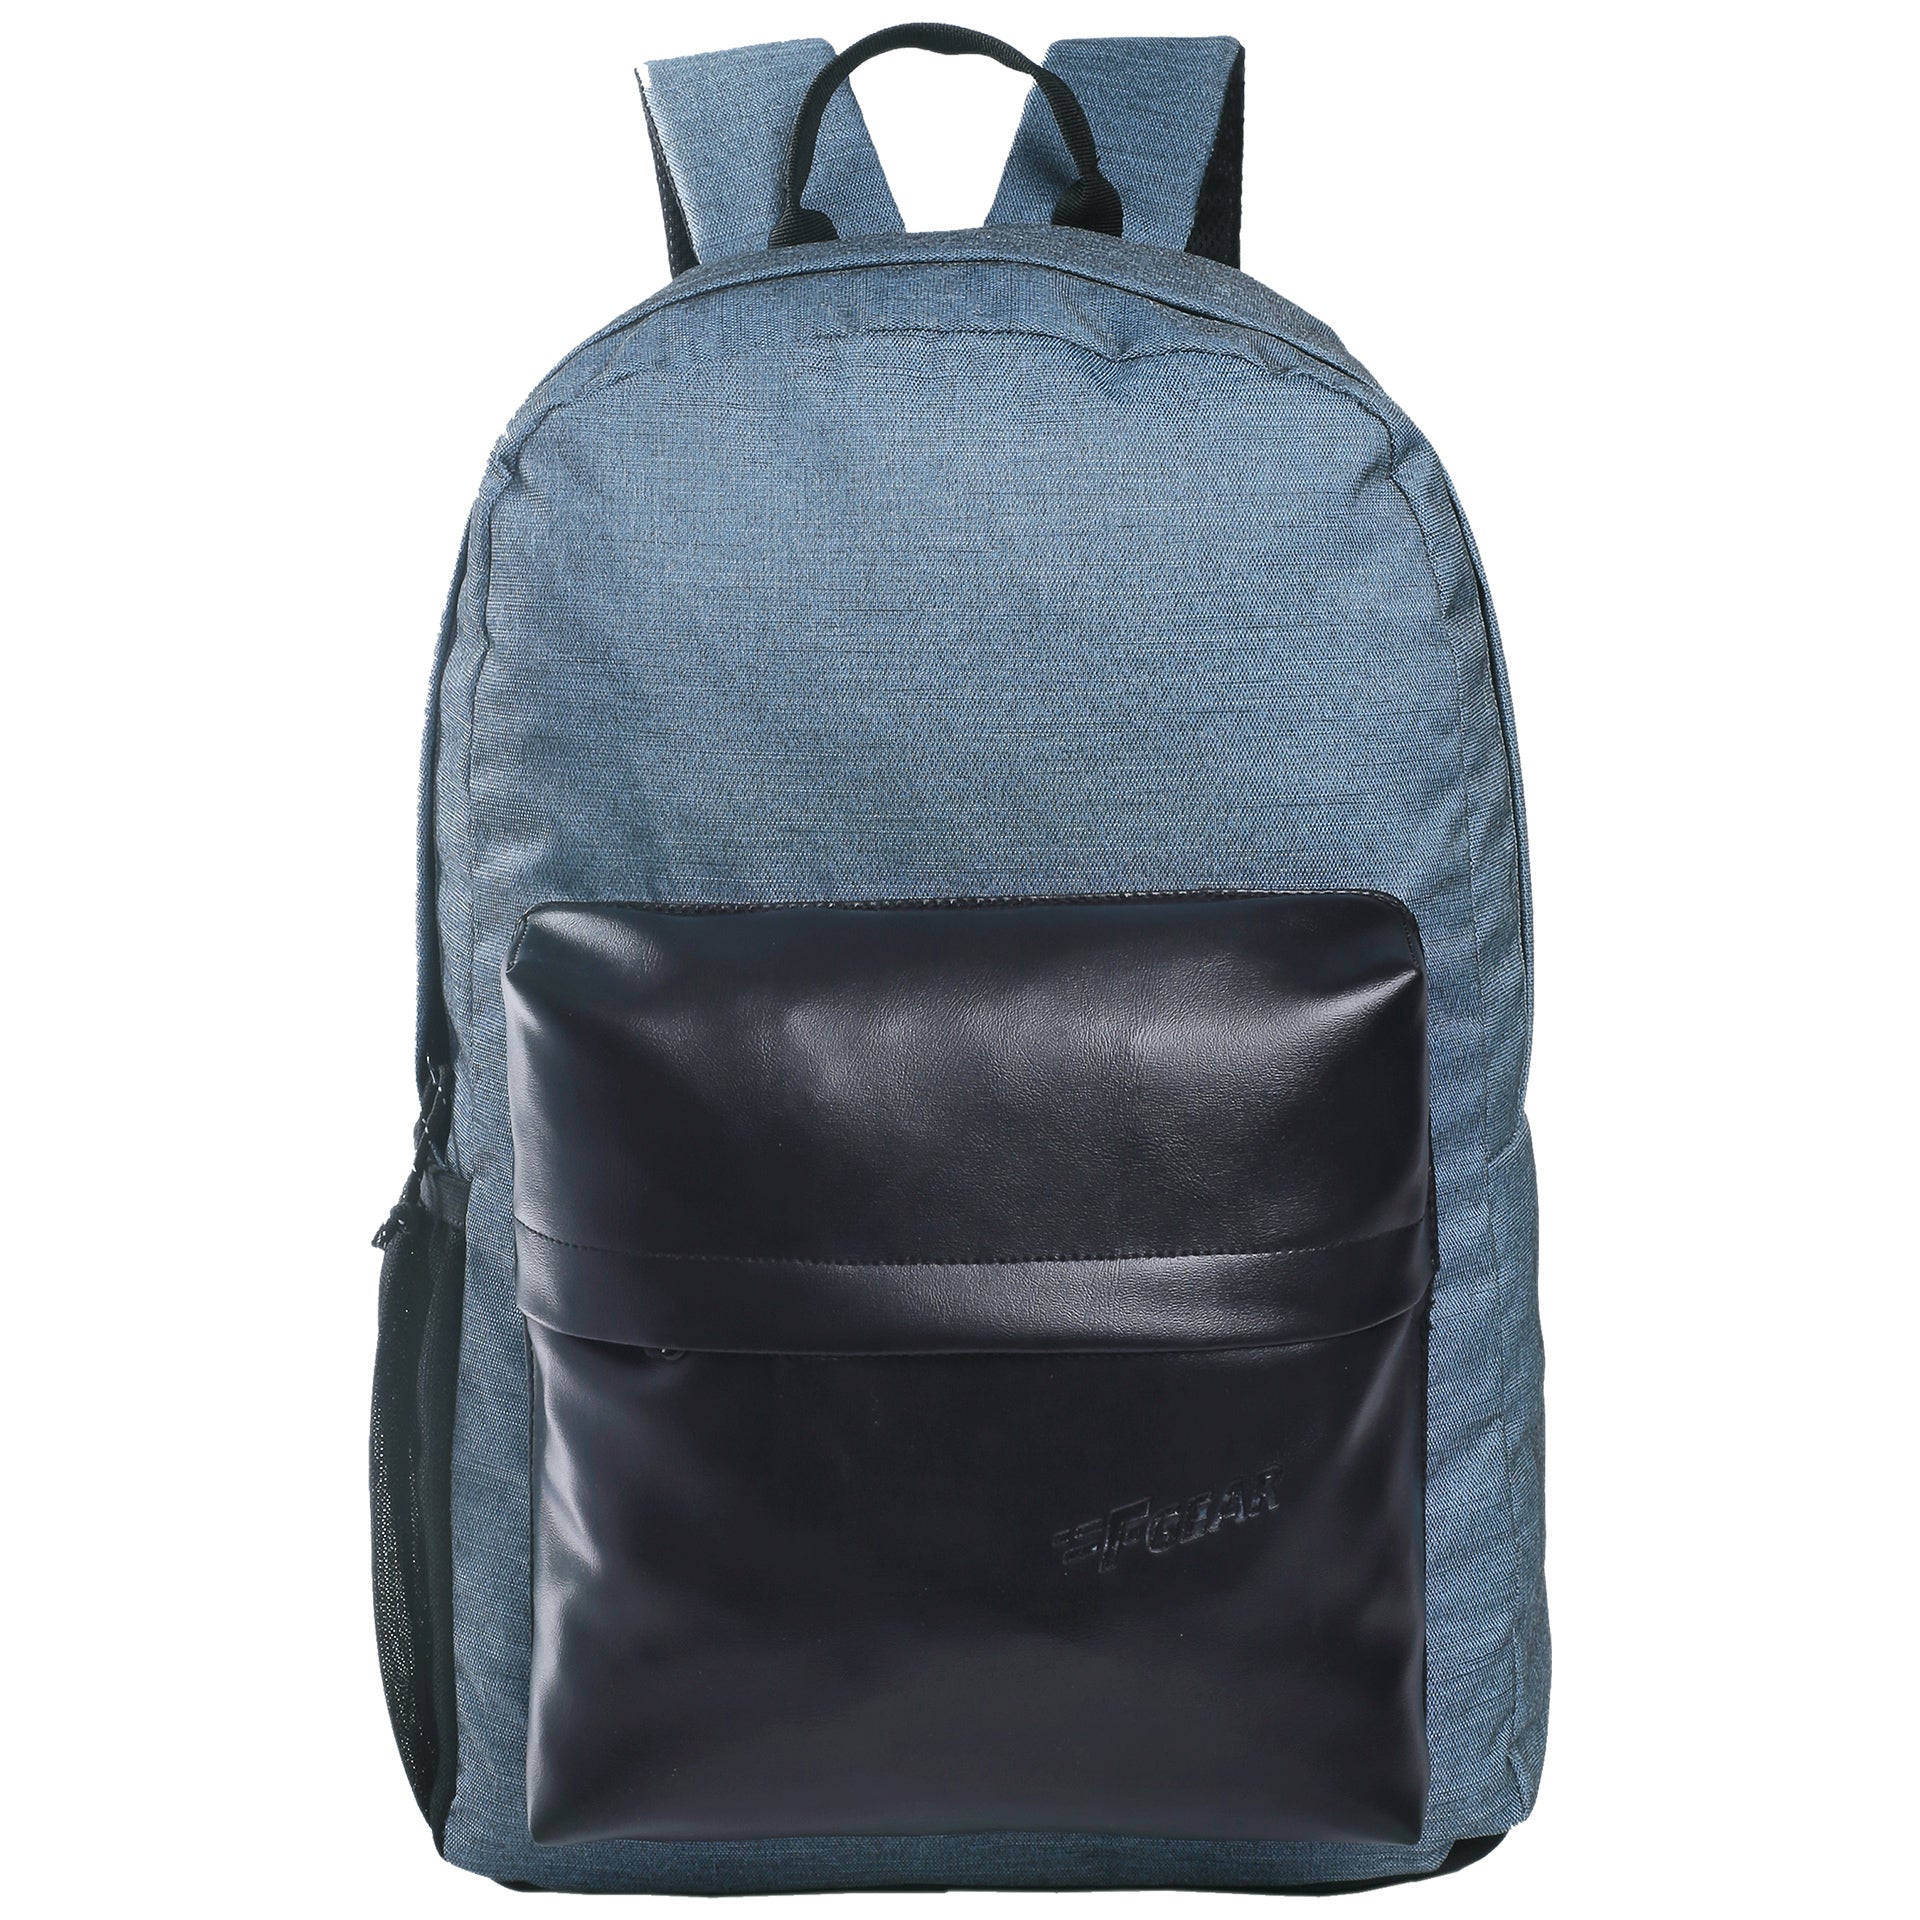 Coach Black Leather Handbag Purse W/Blue Lining - GC | eBay